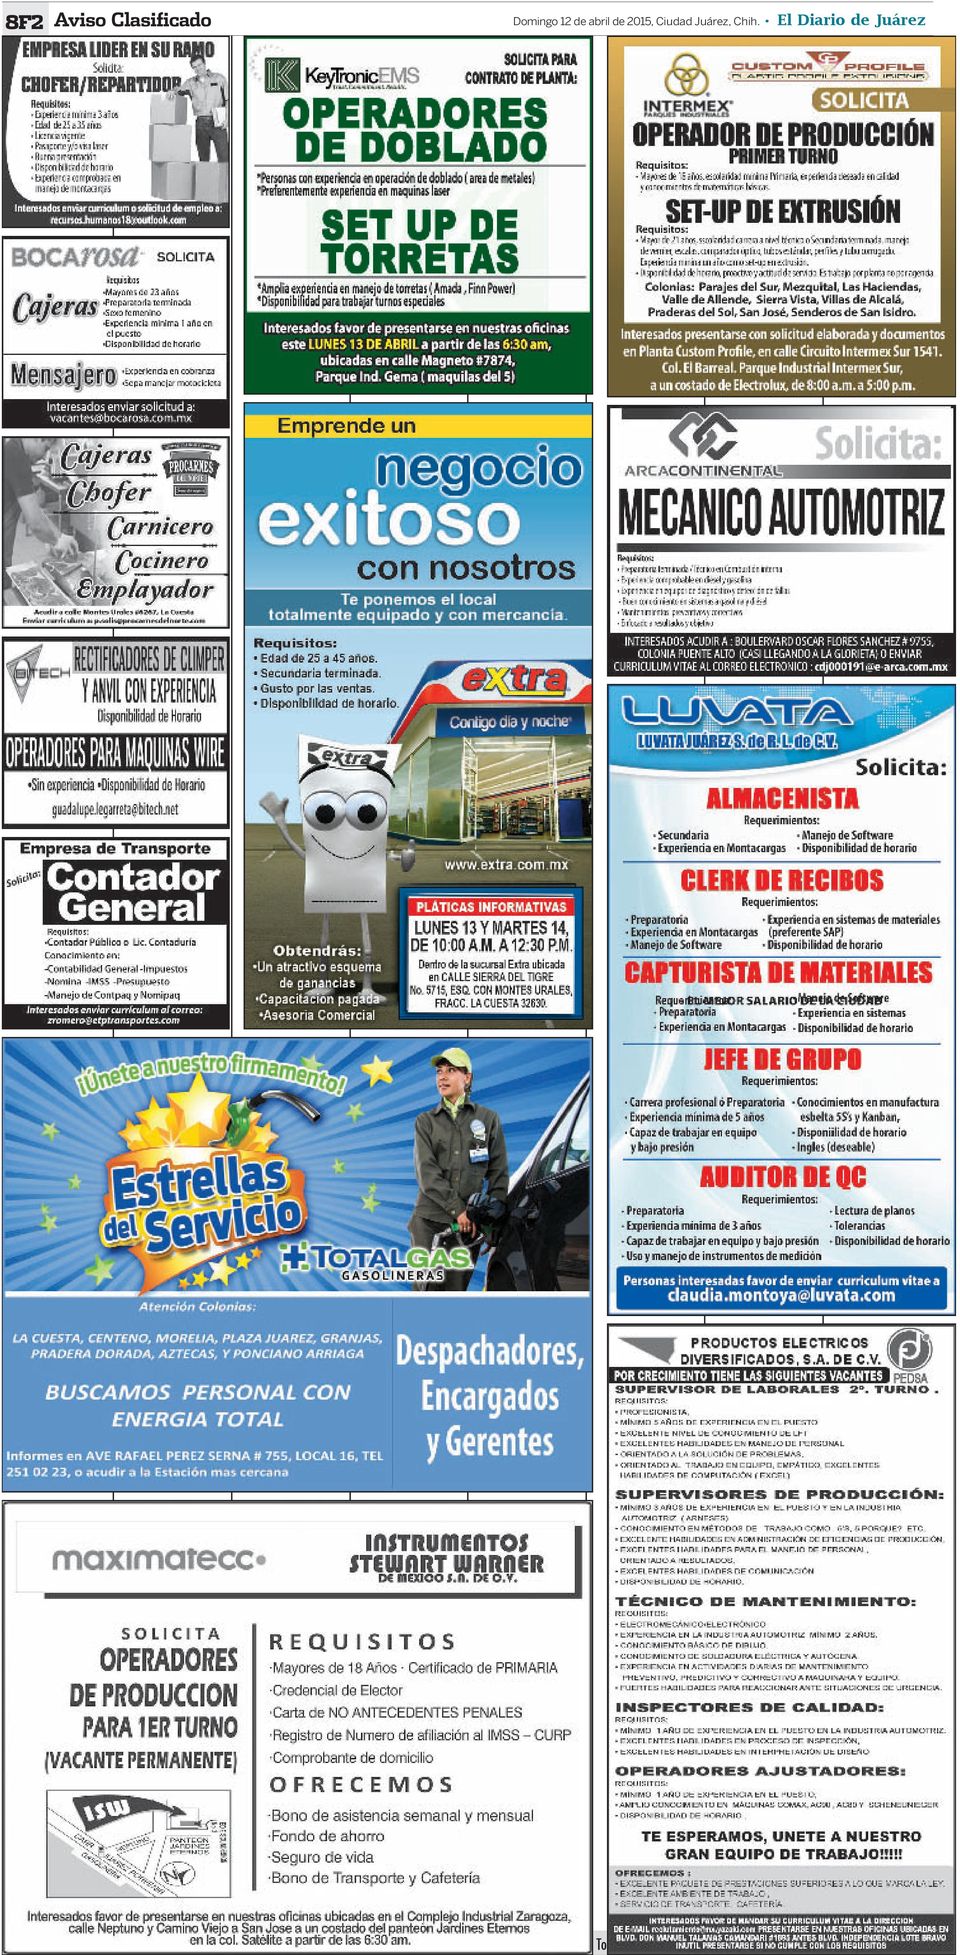 El Diario de Juárez, Sucursal: